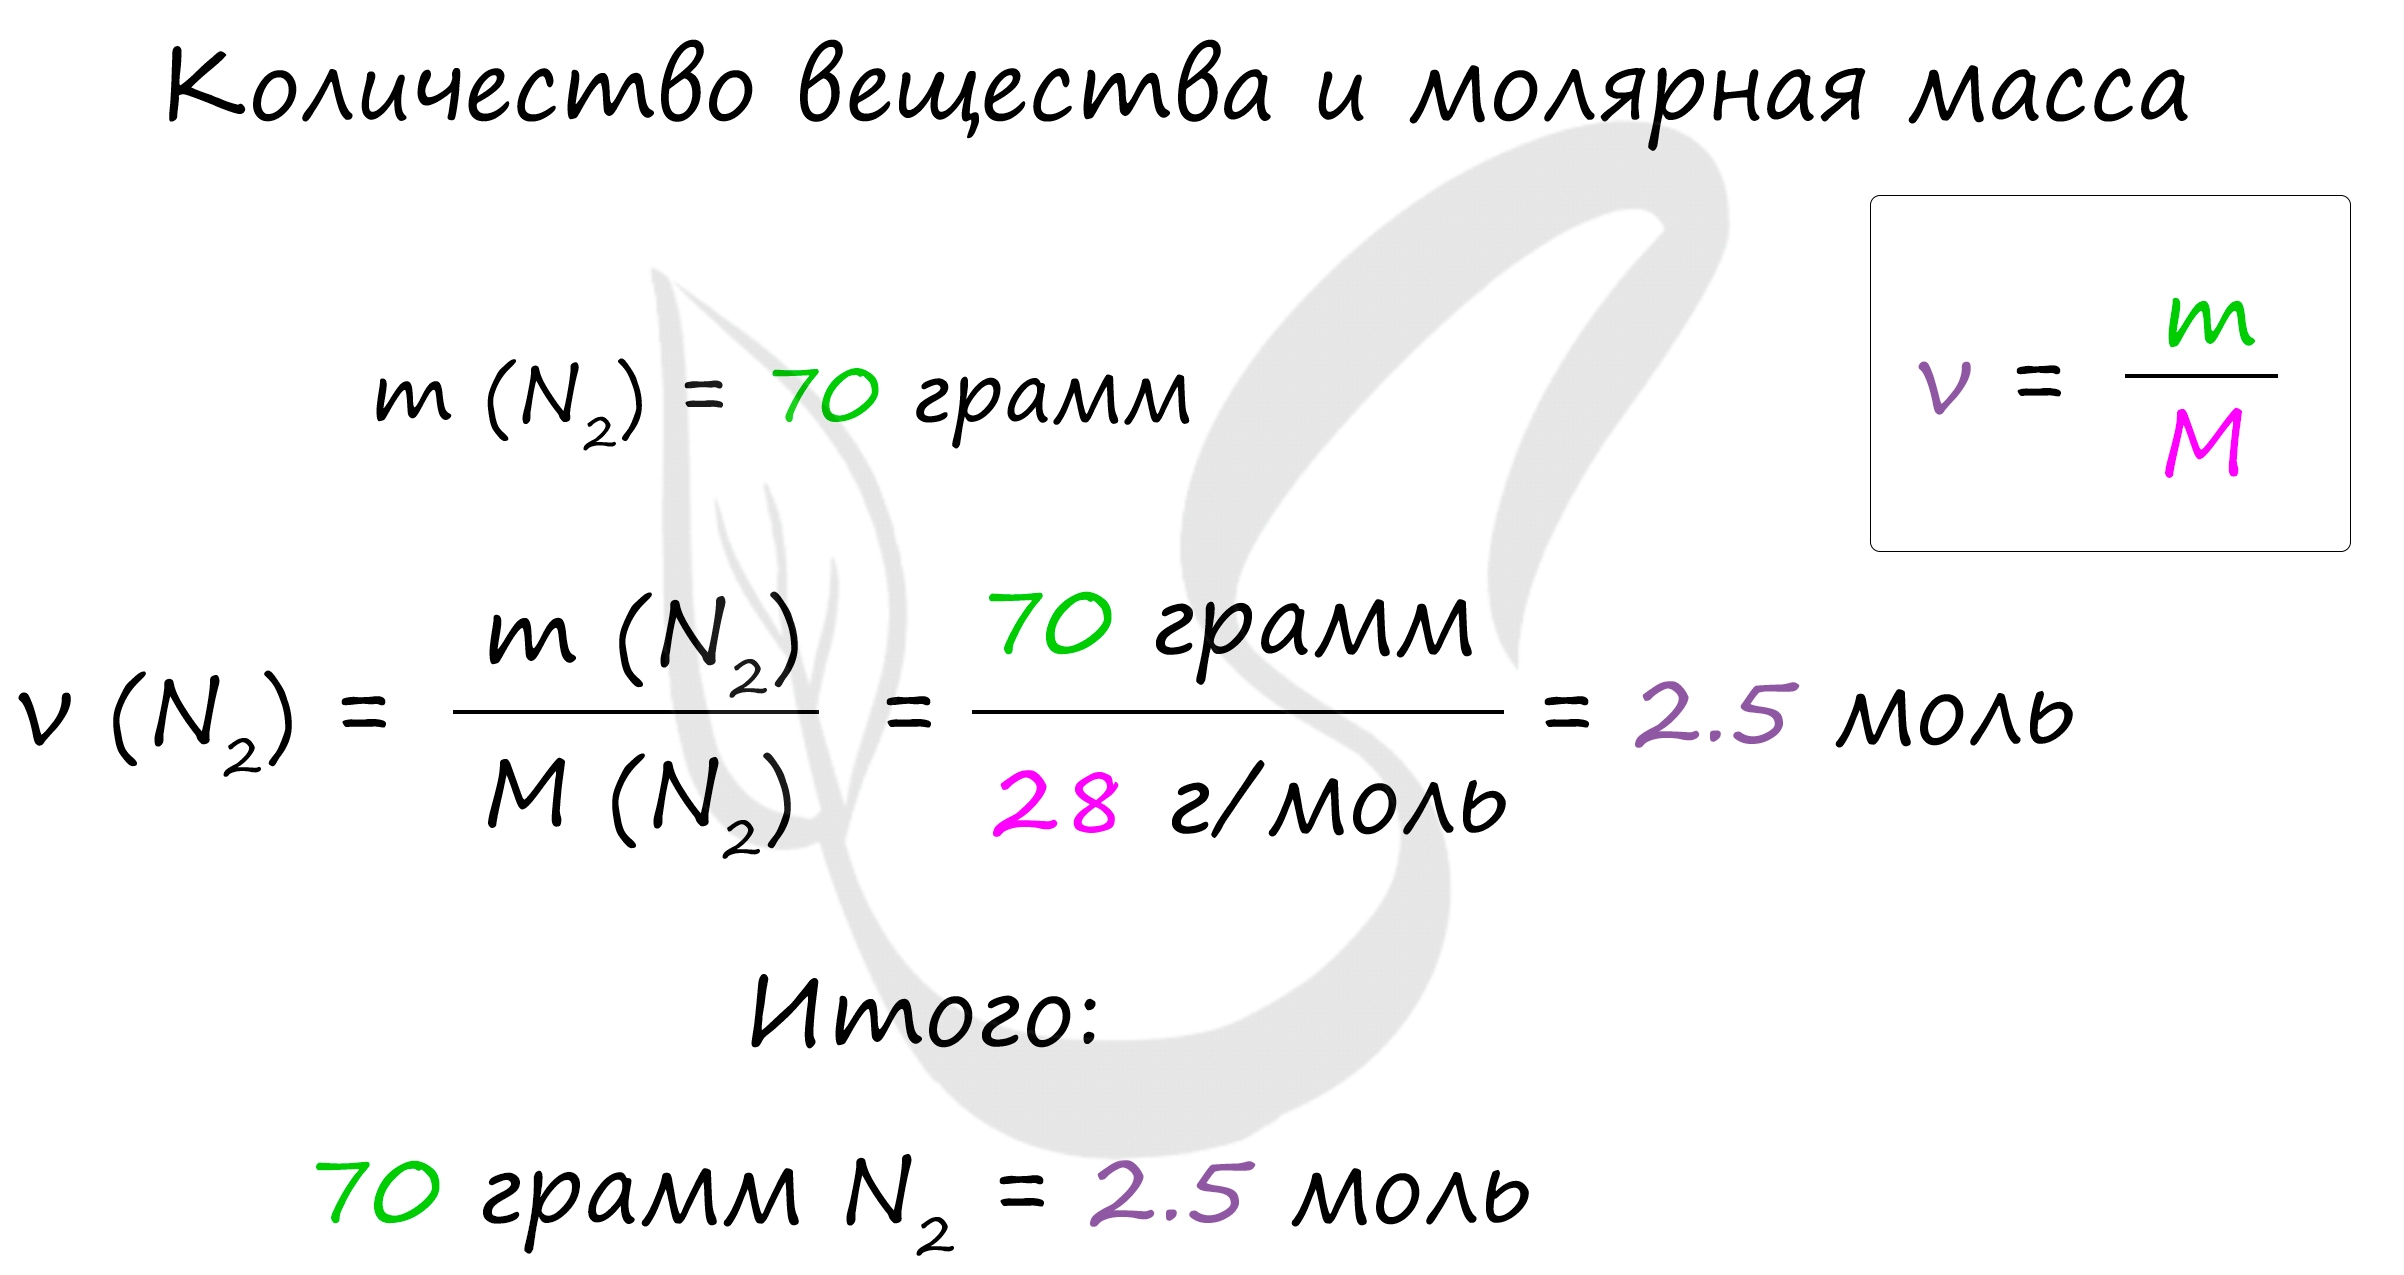 Молярная масса эквивалента, формула и примеры